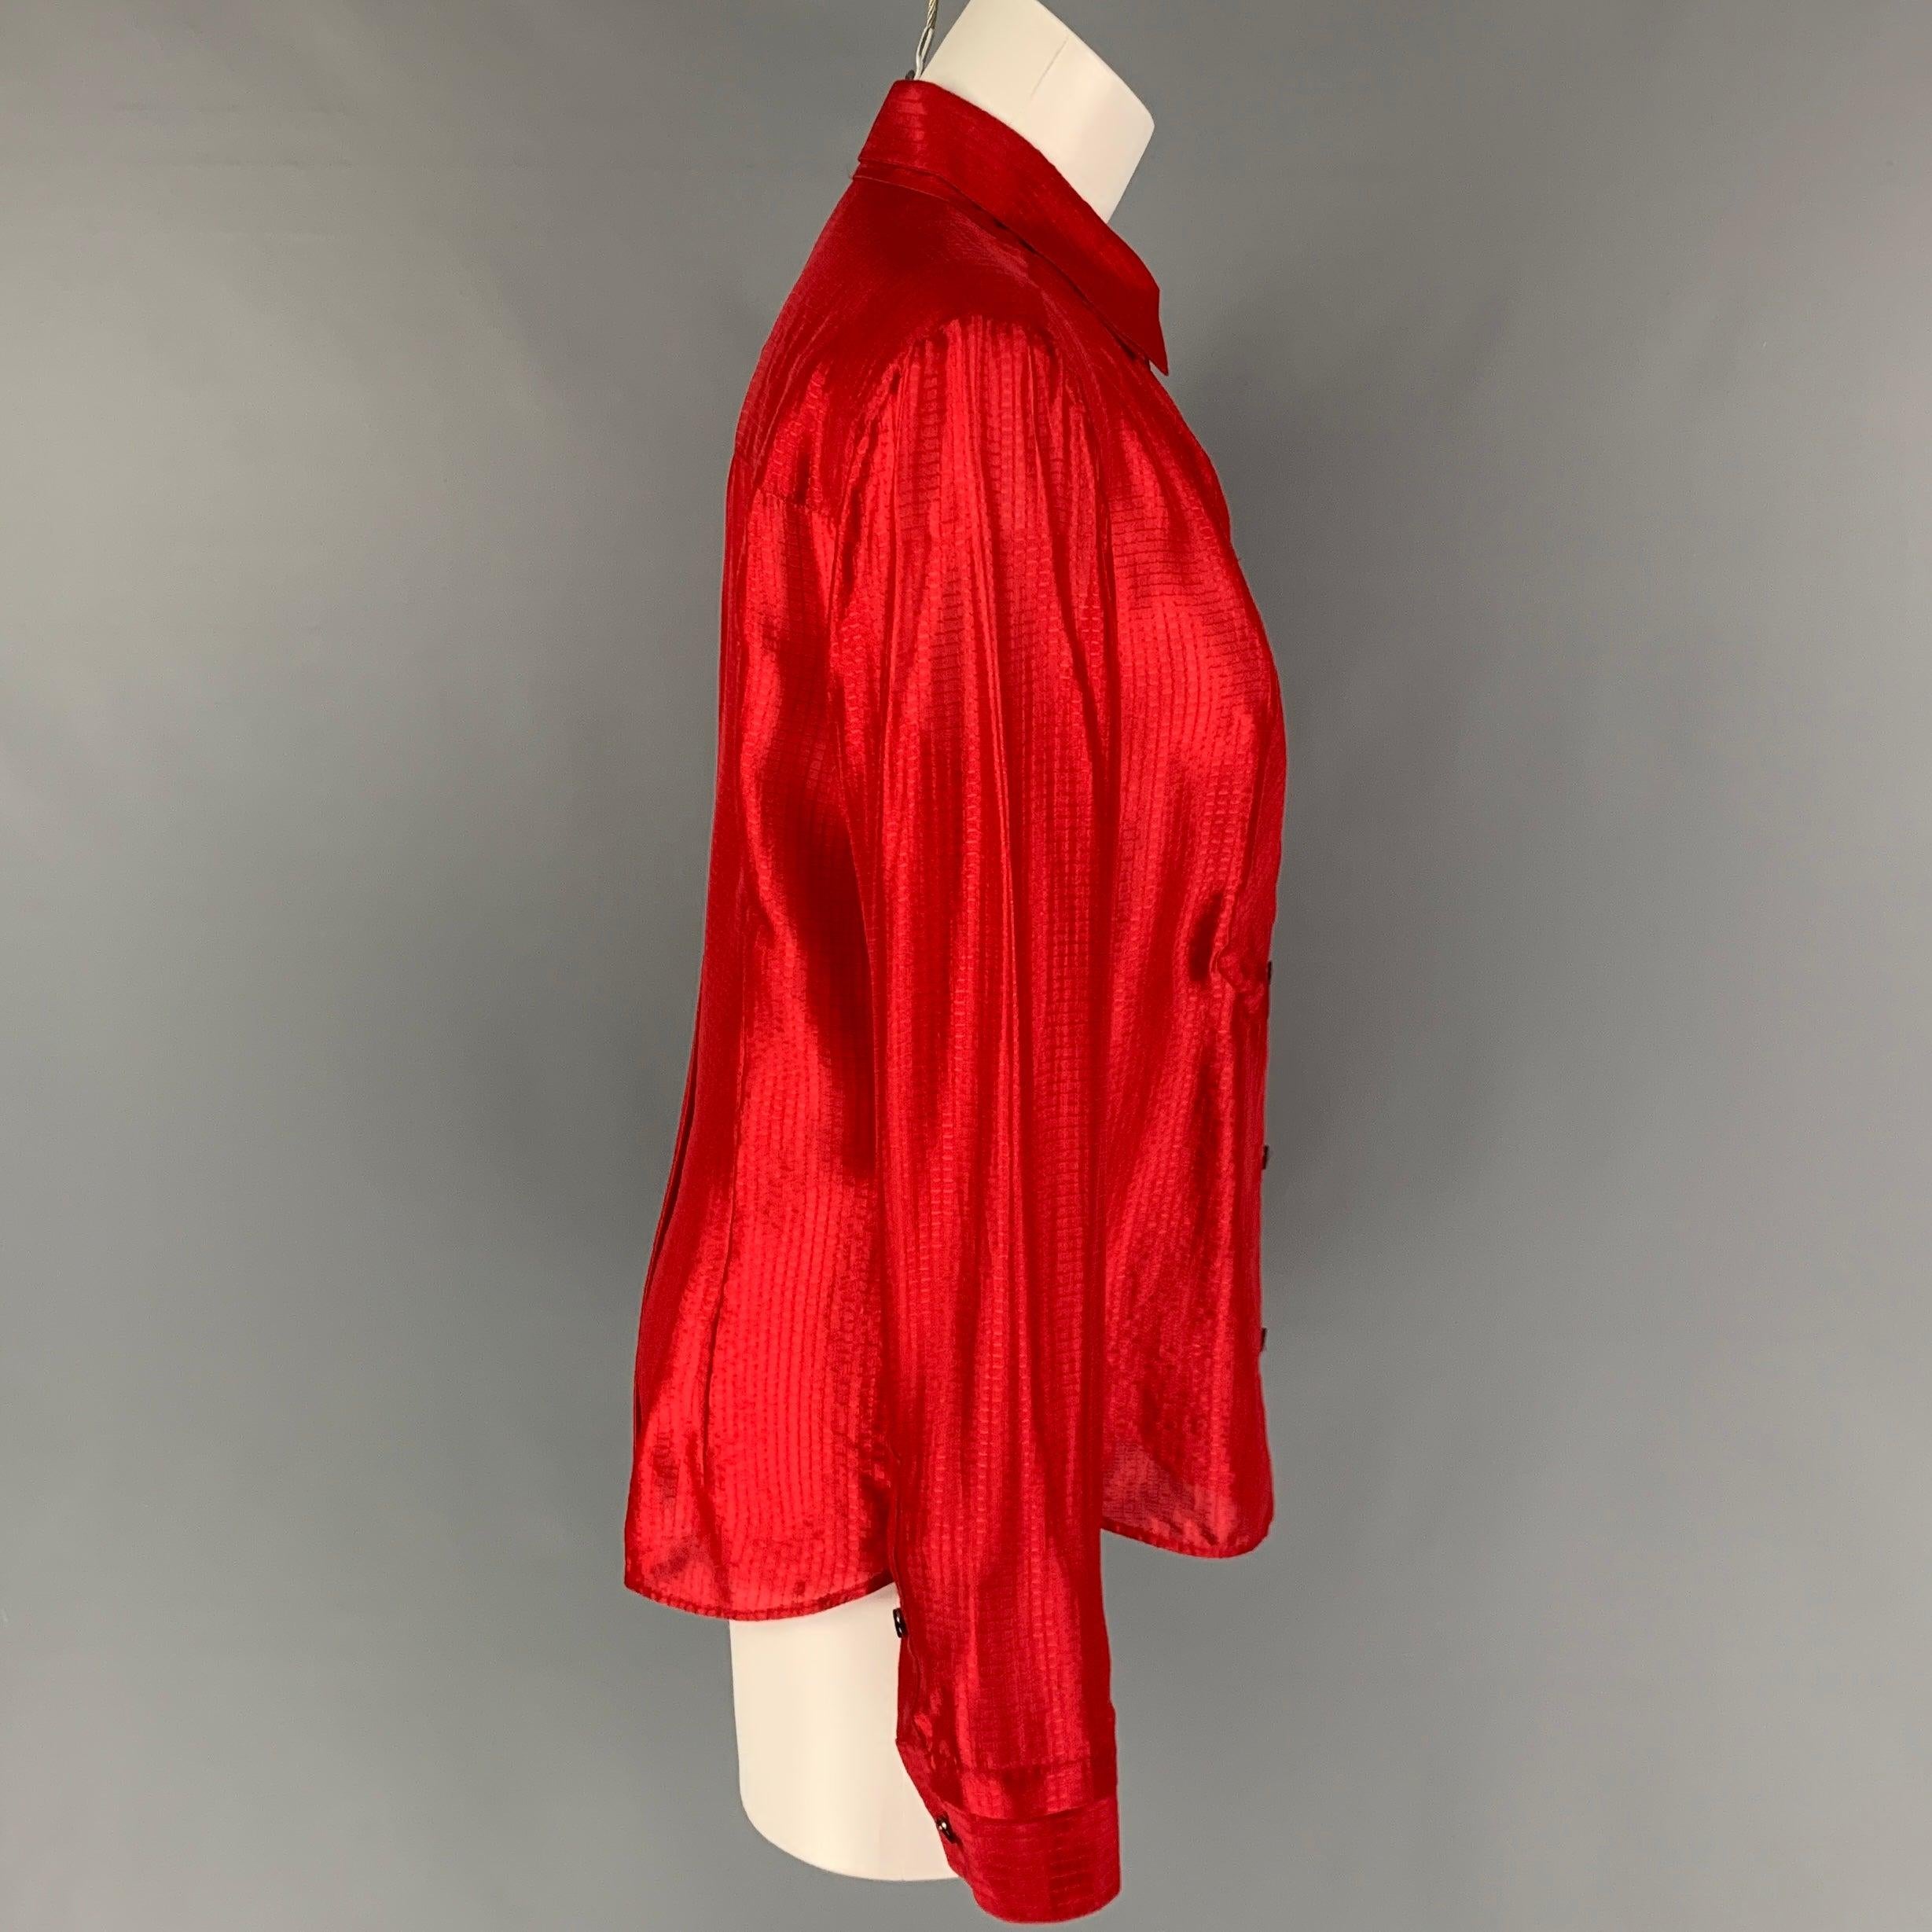 La chemise VIKTOR & ROLF est en soie rouge texturée et présente un col double épaisseur et une fermeture boutonnée. Fabriquées en Italie.
Nouveau avec des étiquettes.
 

Marqué :   46 

Mesures : 
 
Épaule : 16.5 pouces  Poitrine : 38 pouces  Manche